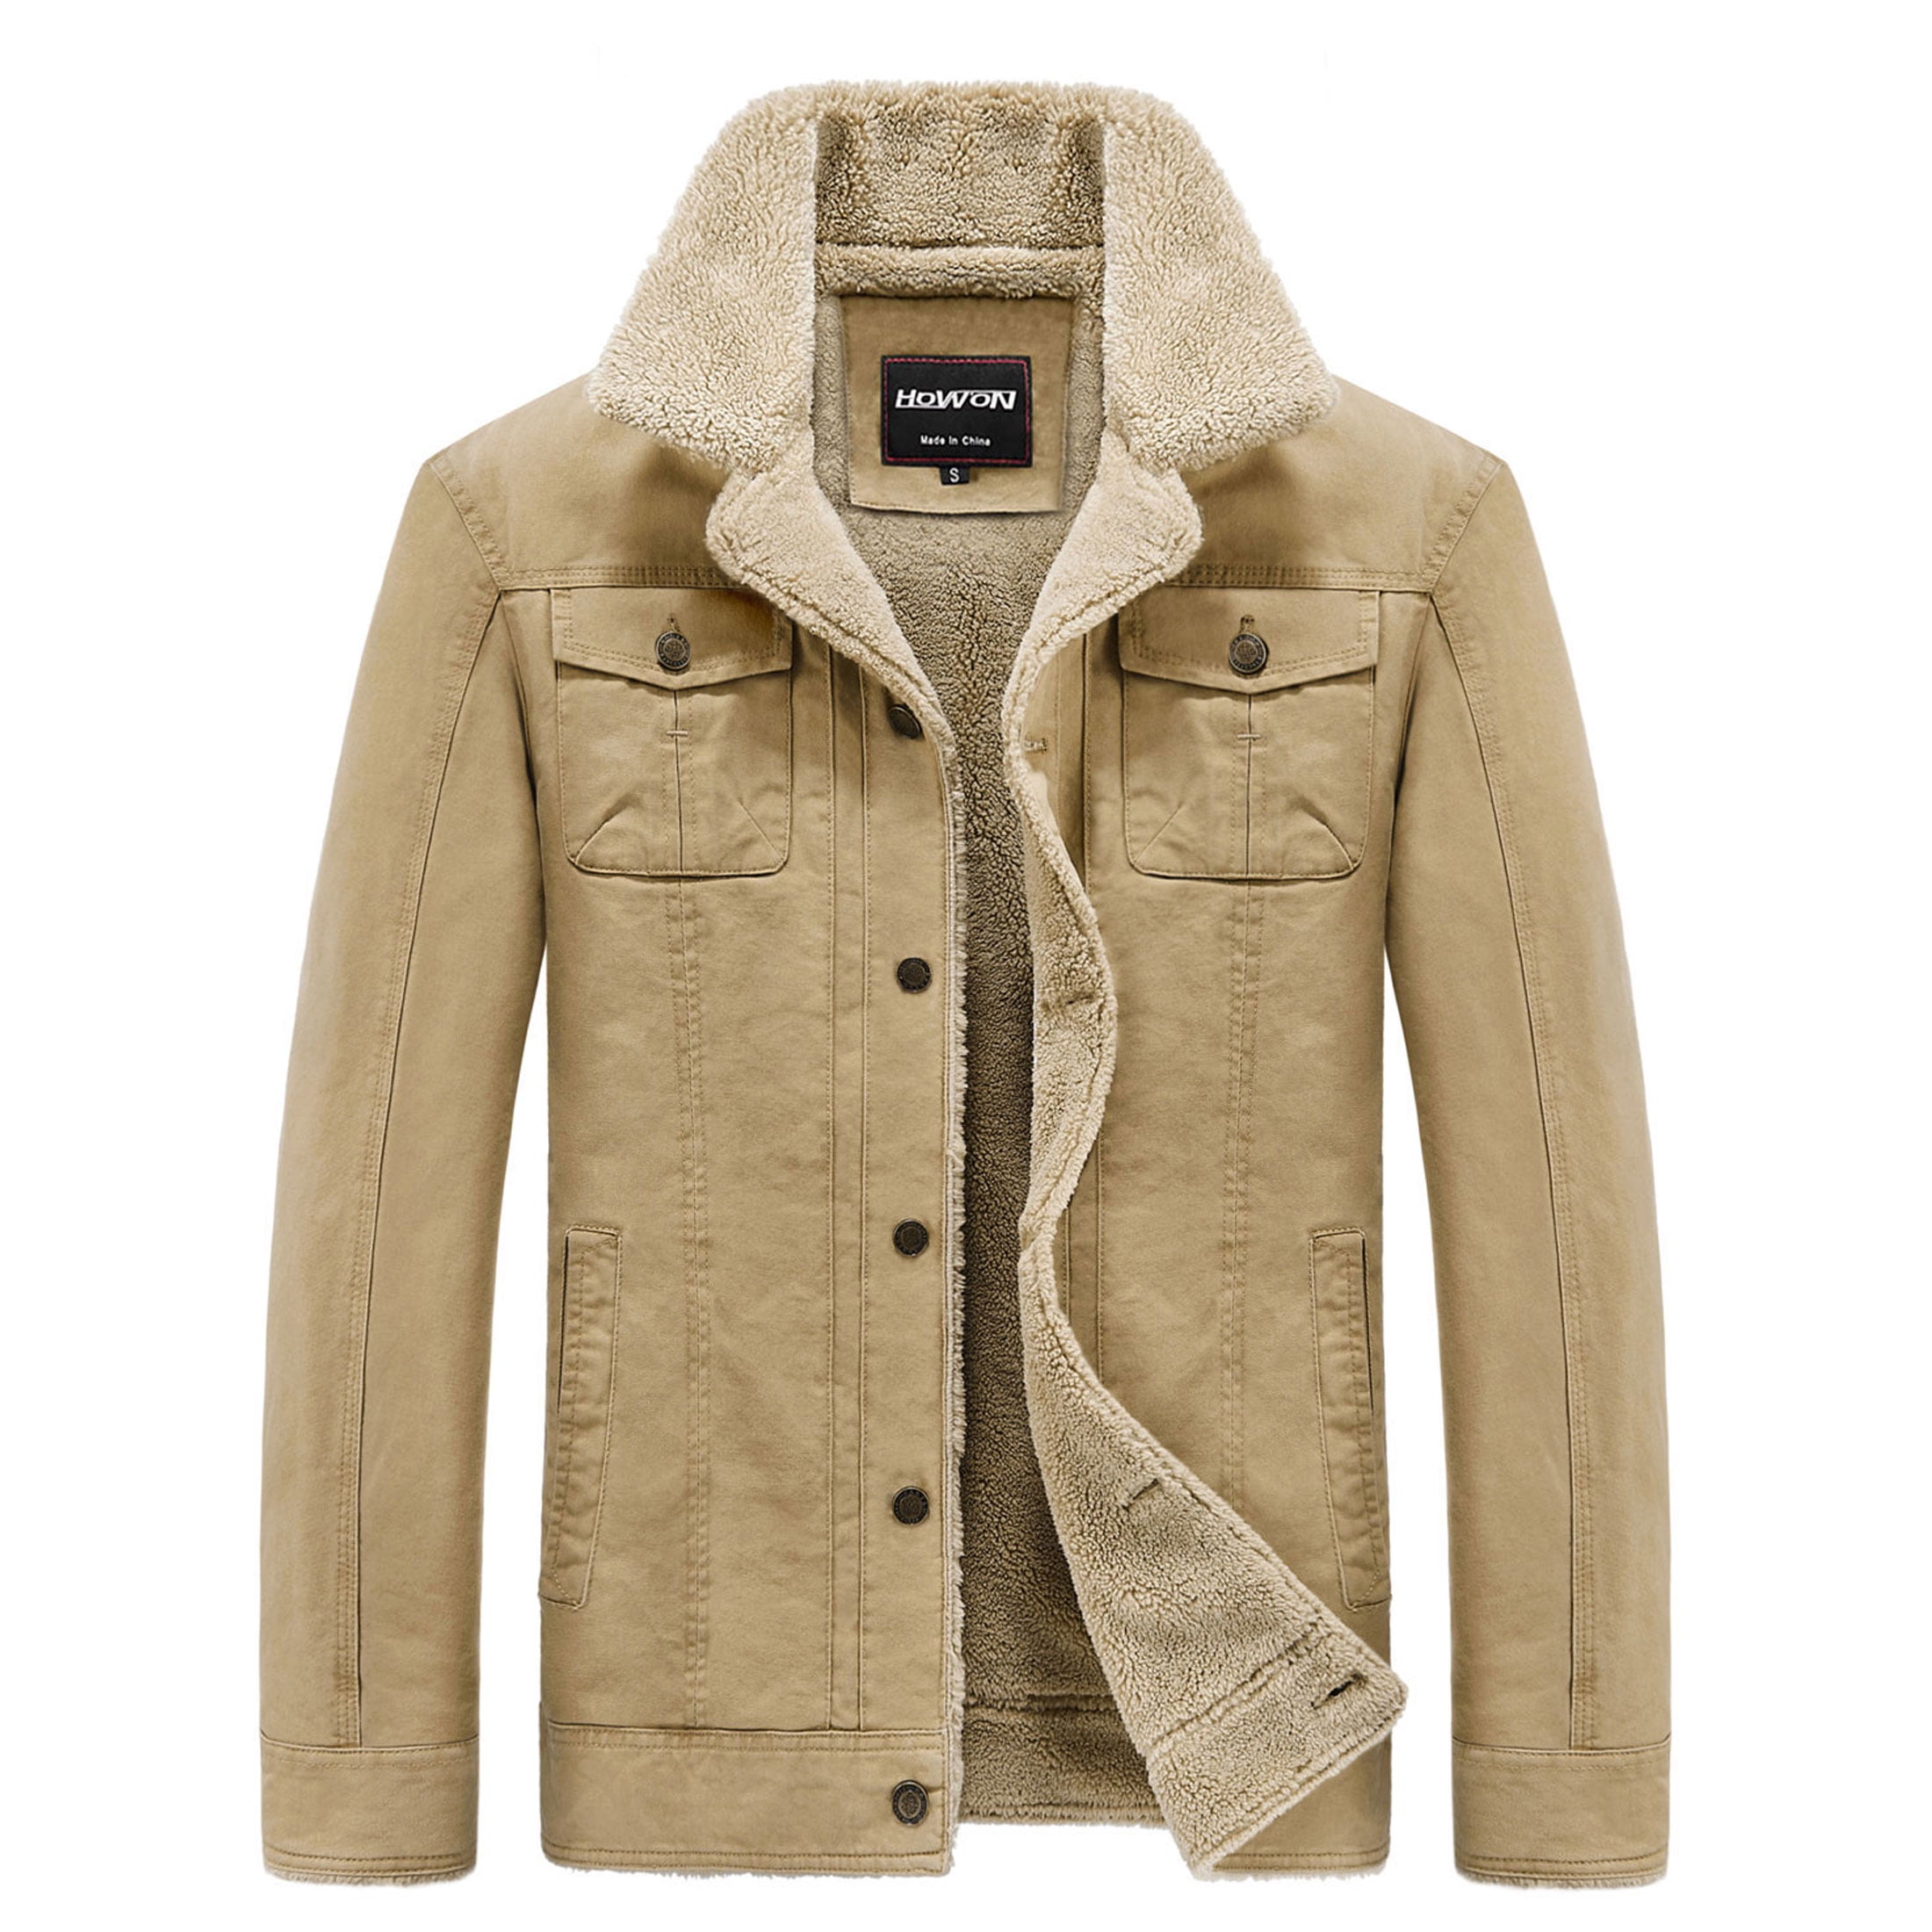 HOW'ON Men's Warm Utility Sherpa Lined Jacket Outwear Casual Multi ...